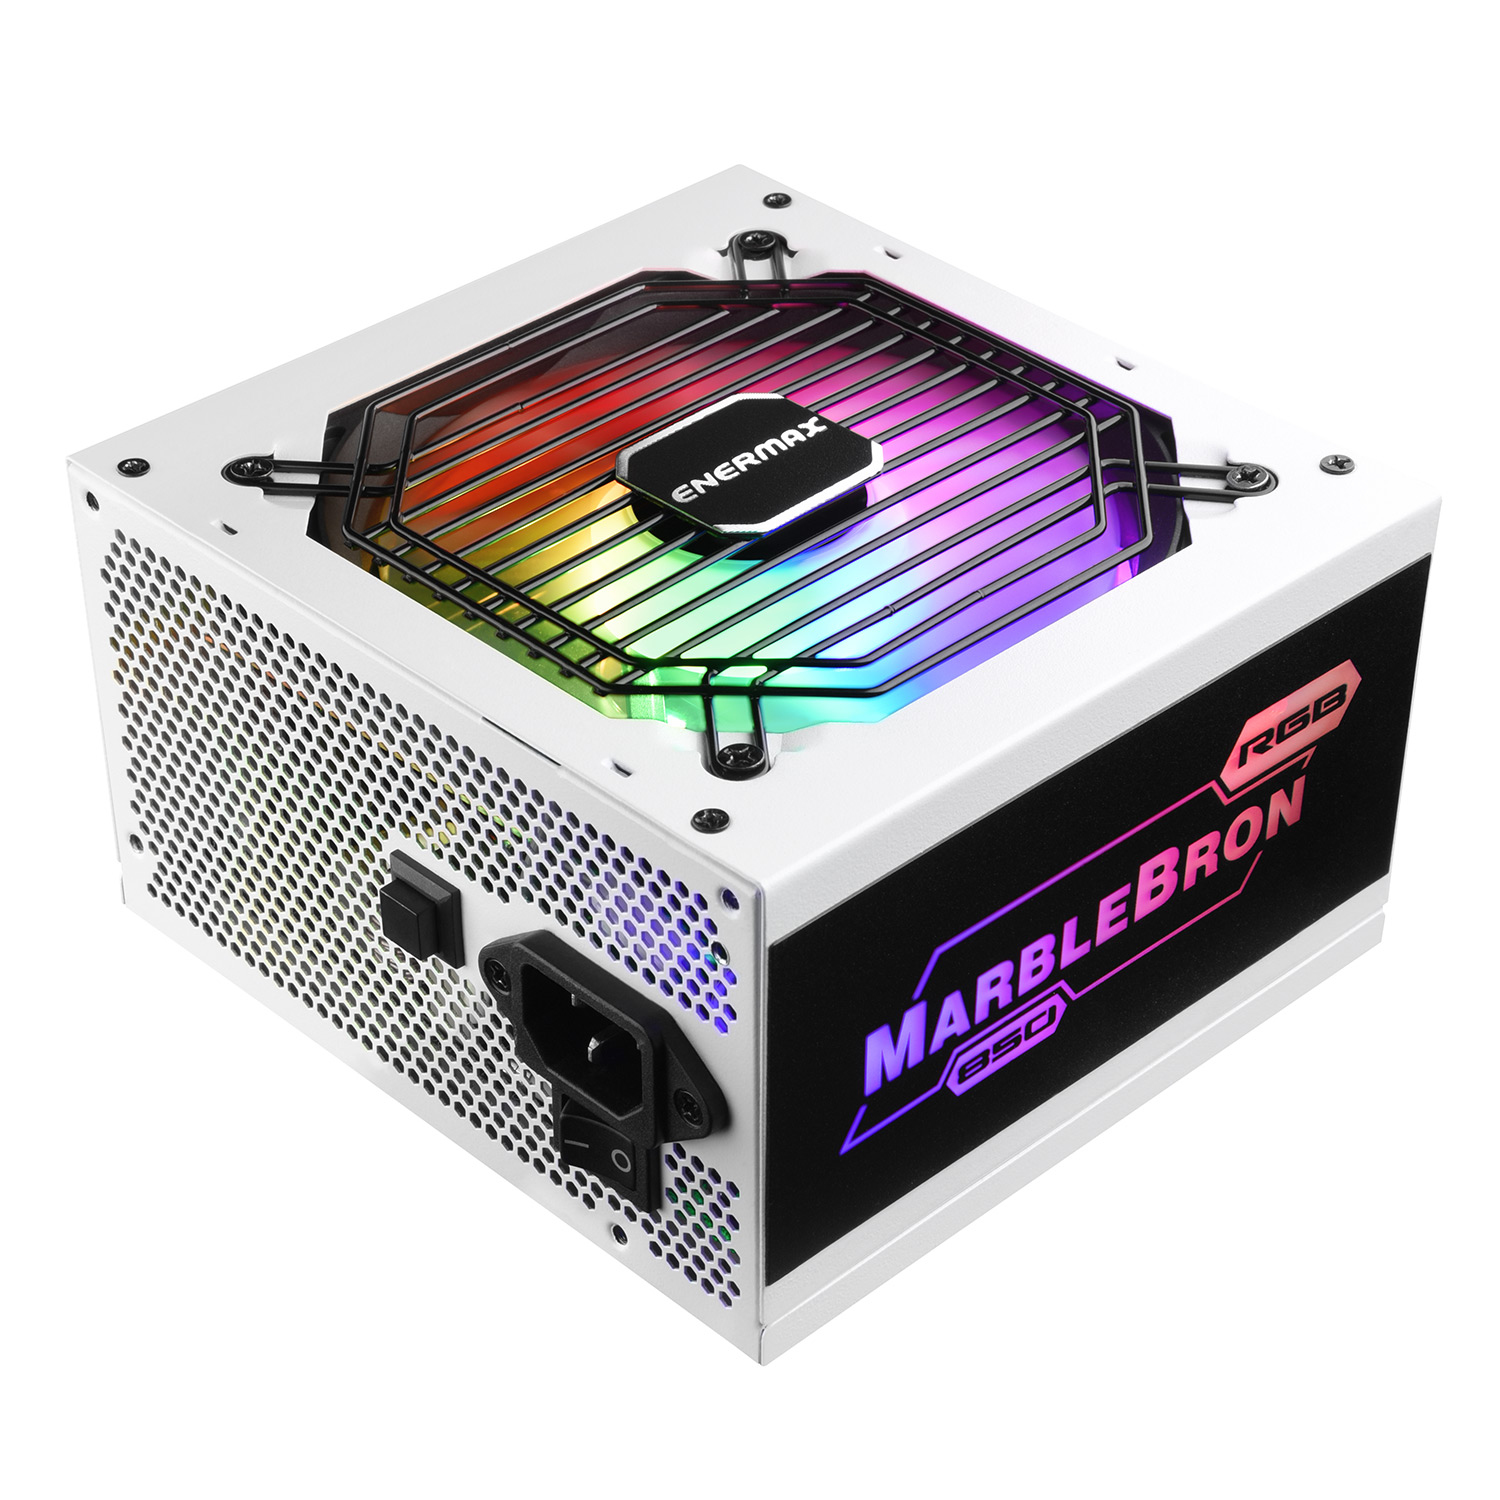 Enermax EMB850EWT-W-RGB  Enermax ALIMENTATION MARBLEBRON 850W RGB WHITE